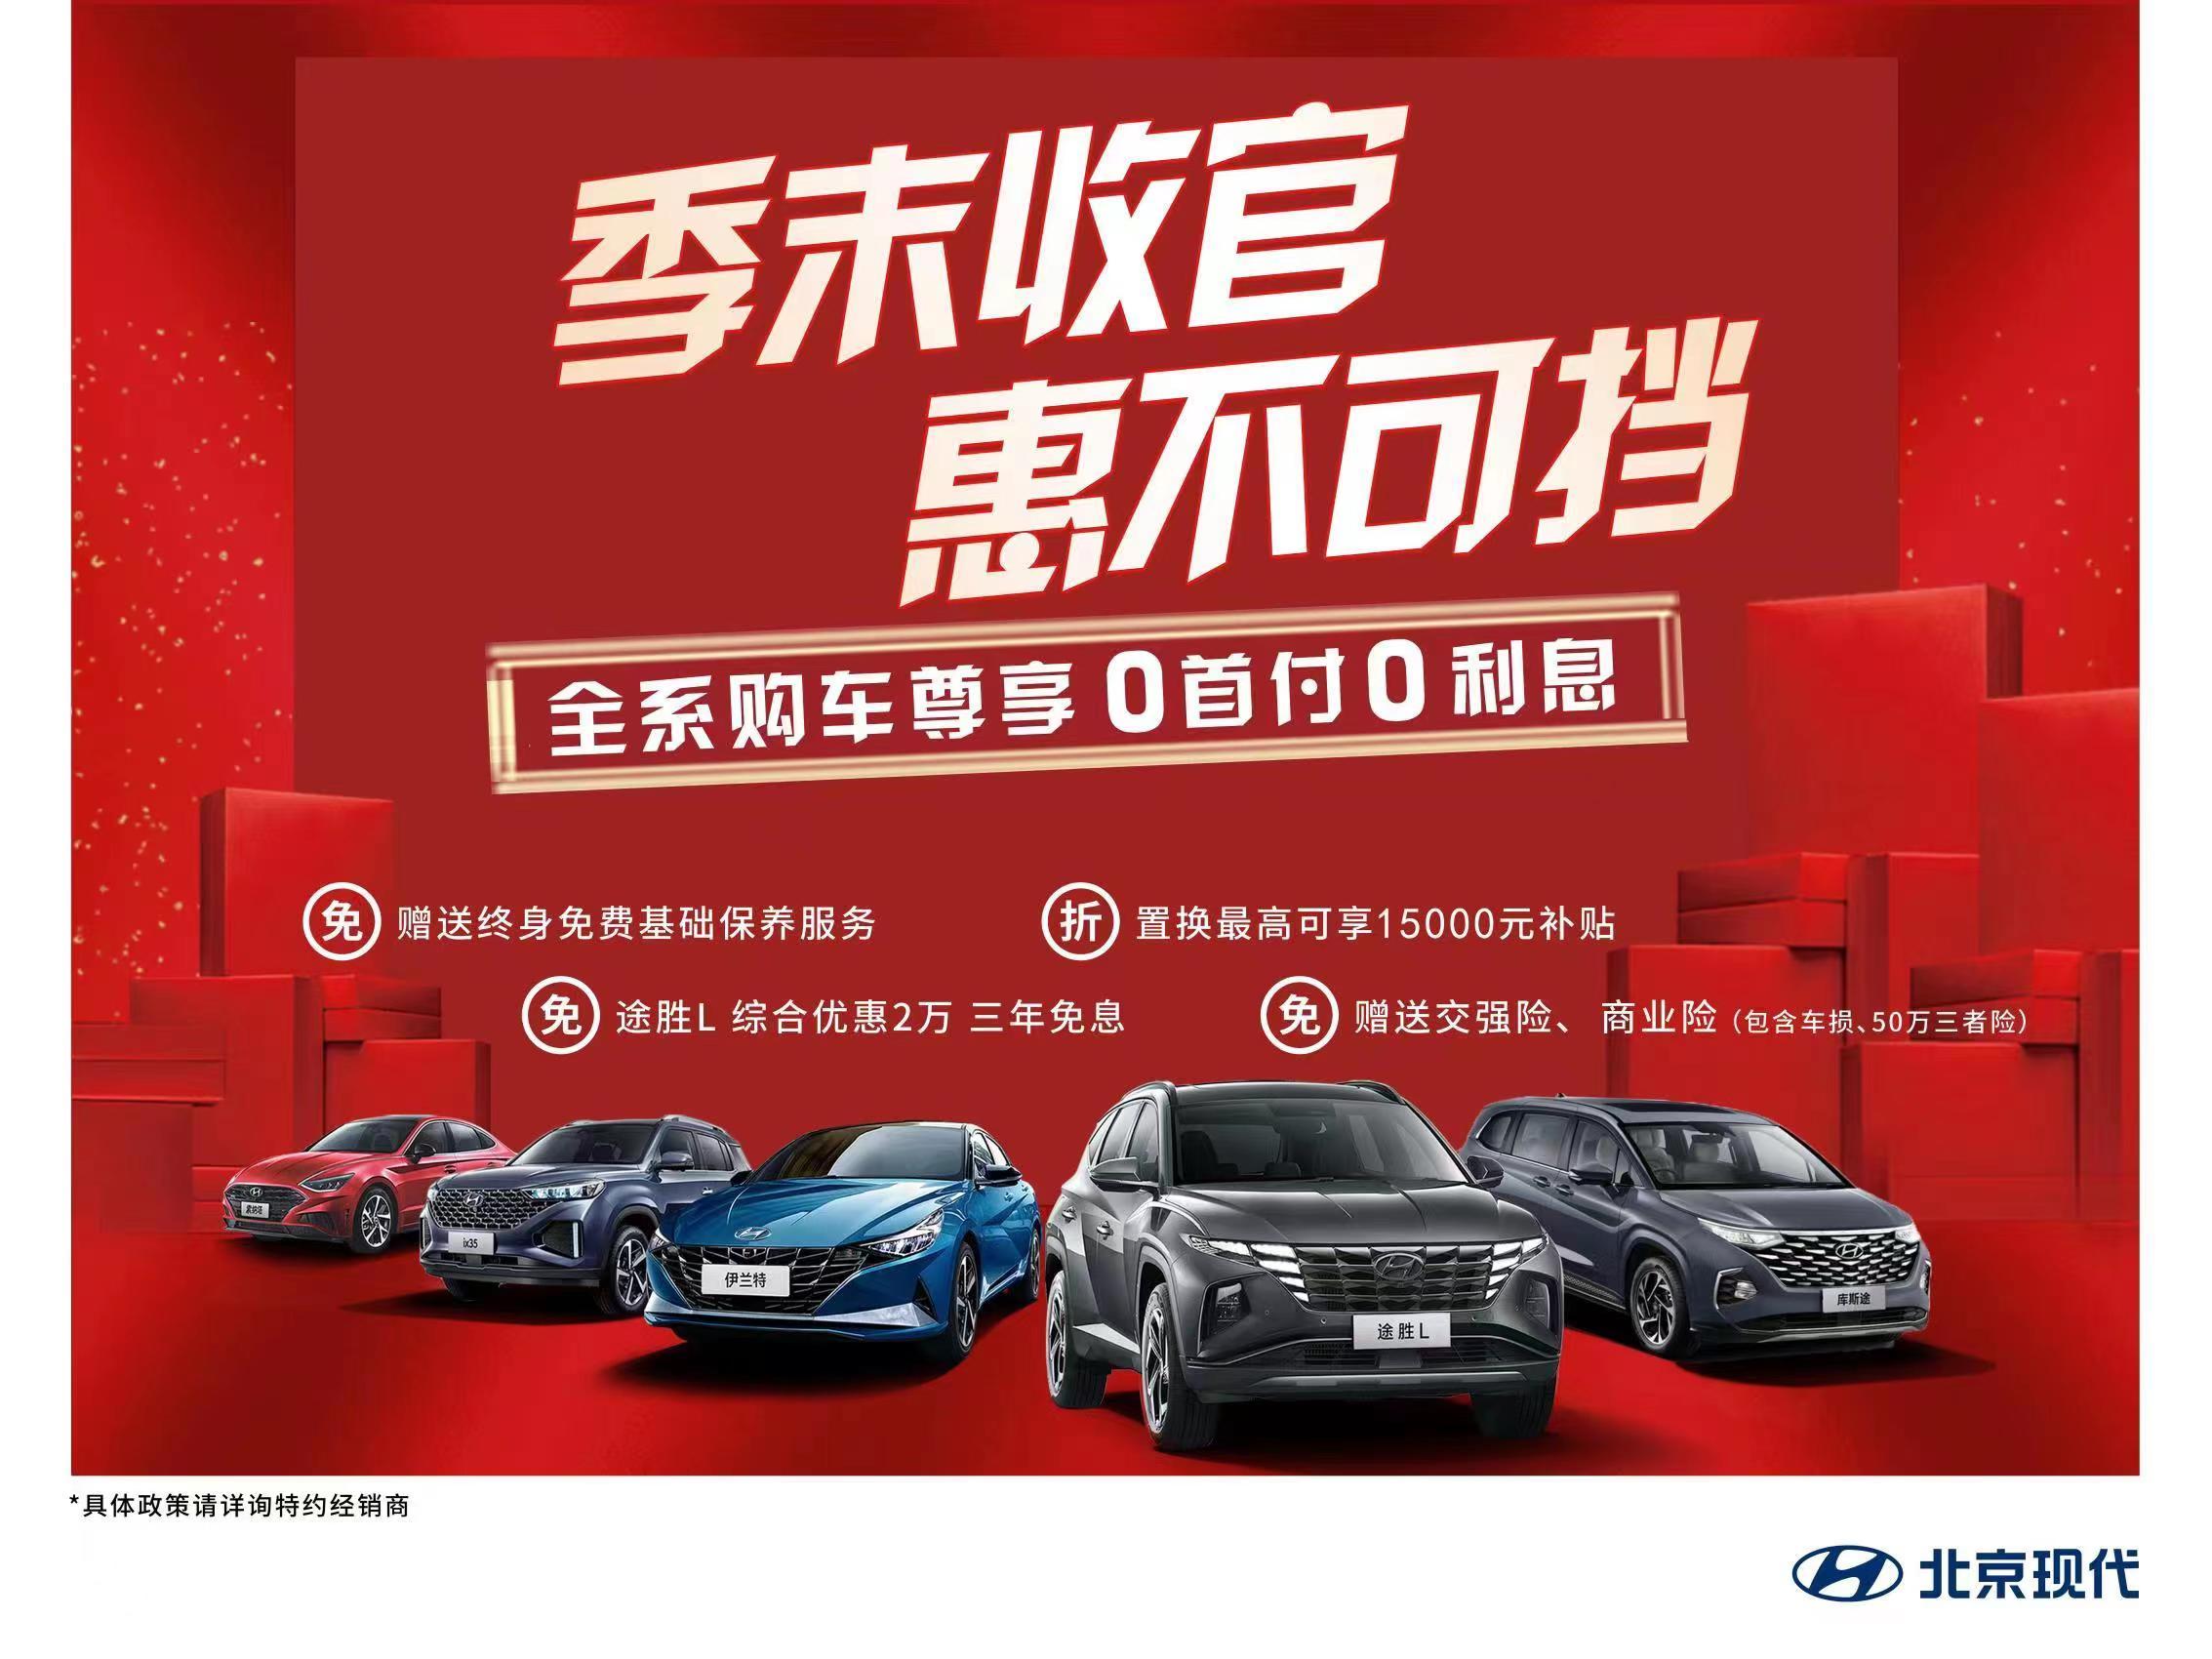 莆田奇奇汽车品牌，传承与创新并蓄，打造中国民族汽车新辉煌